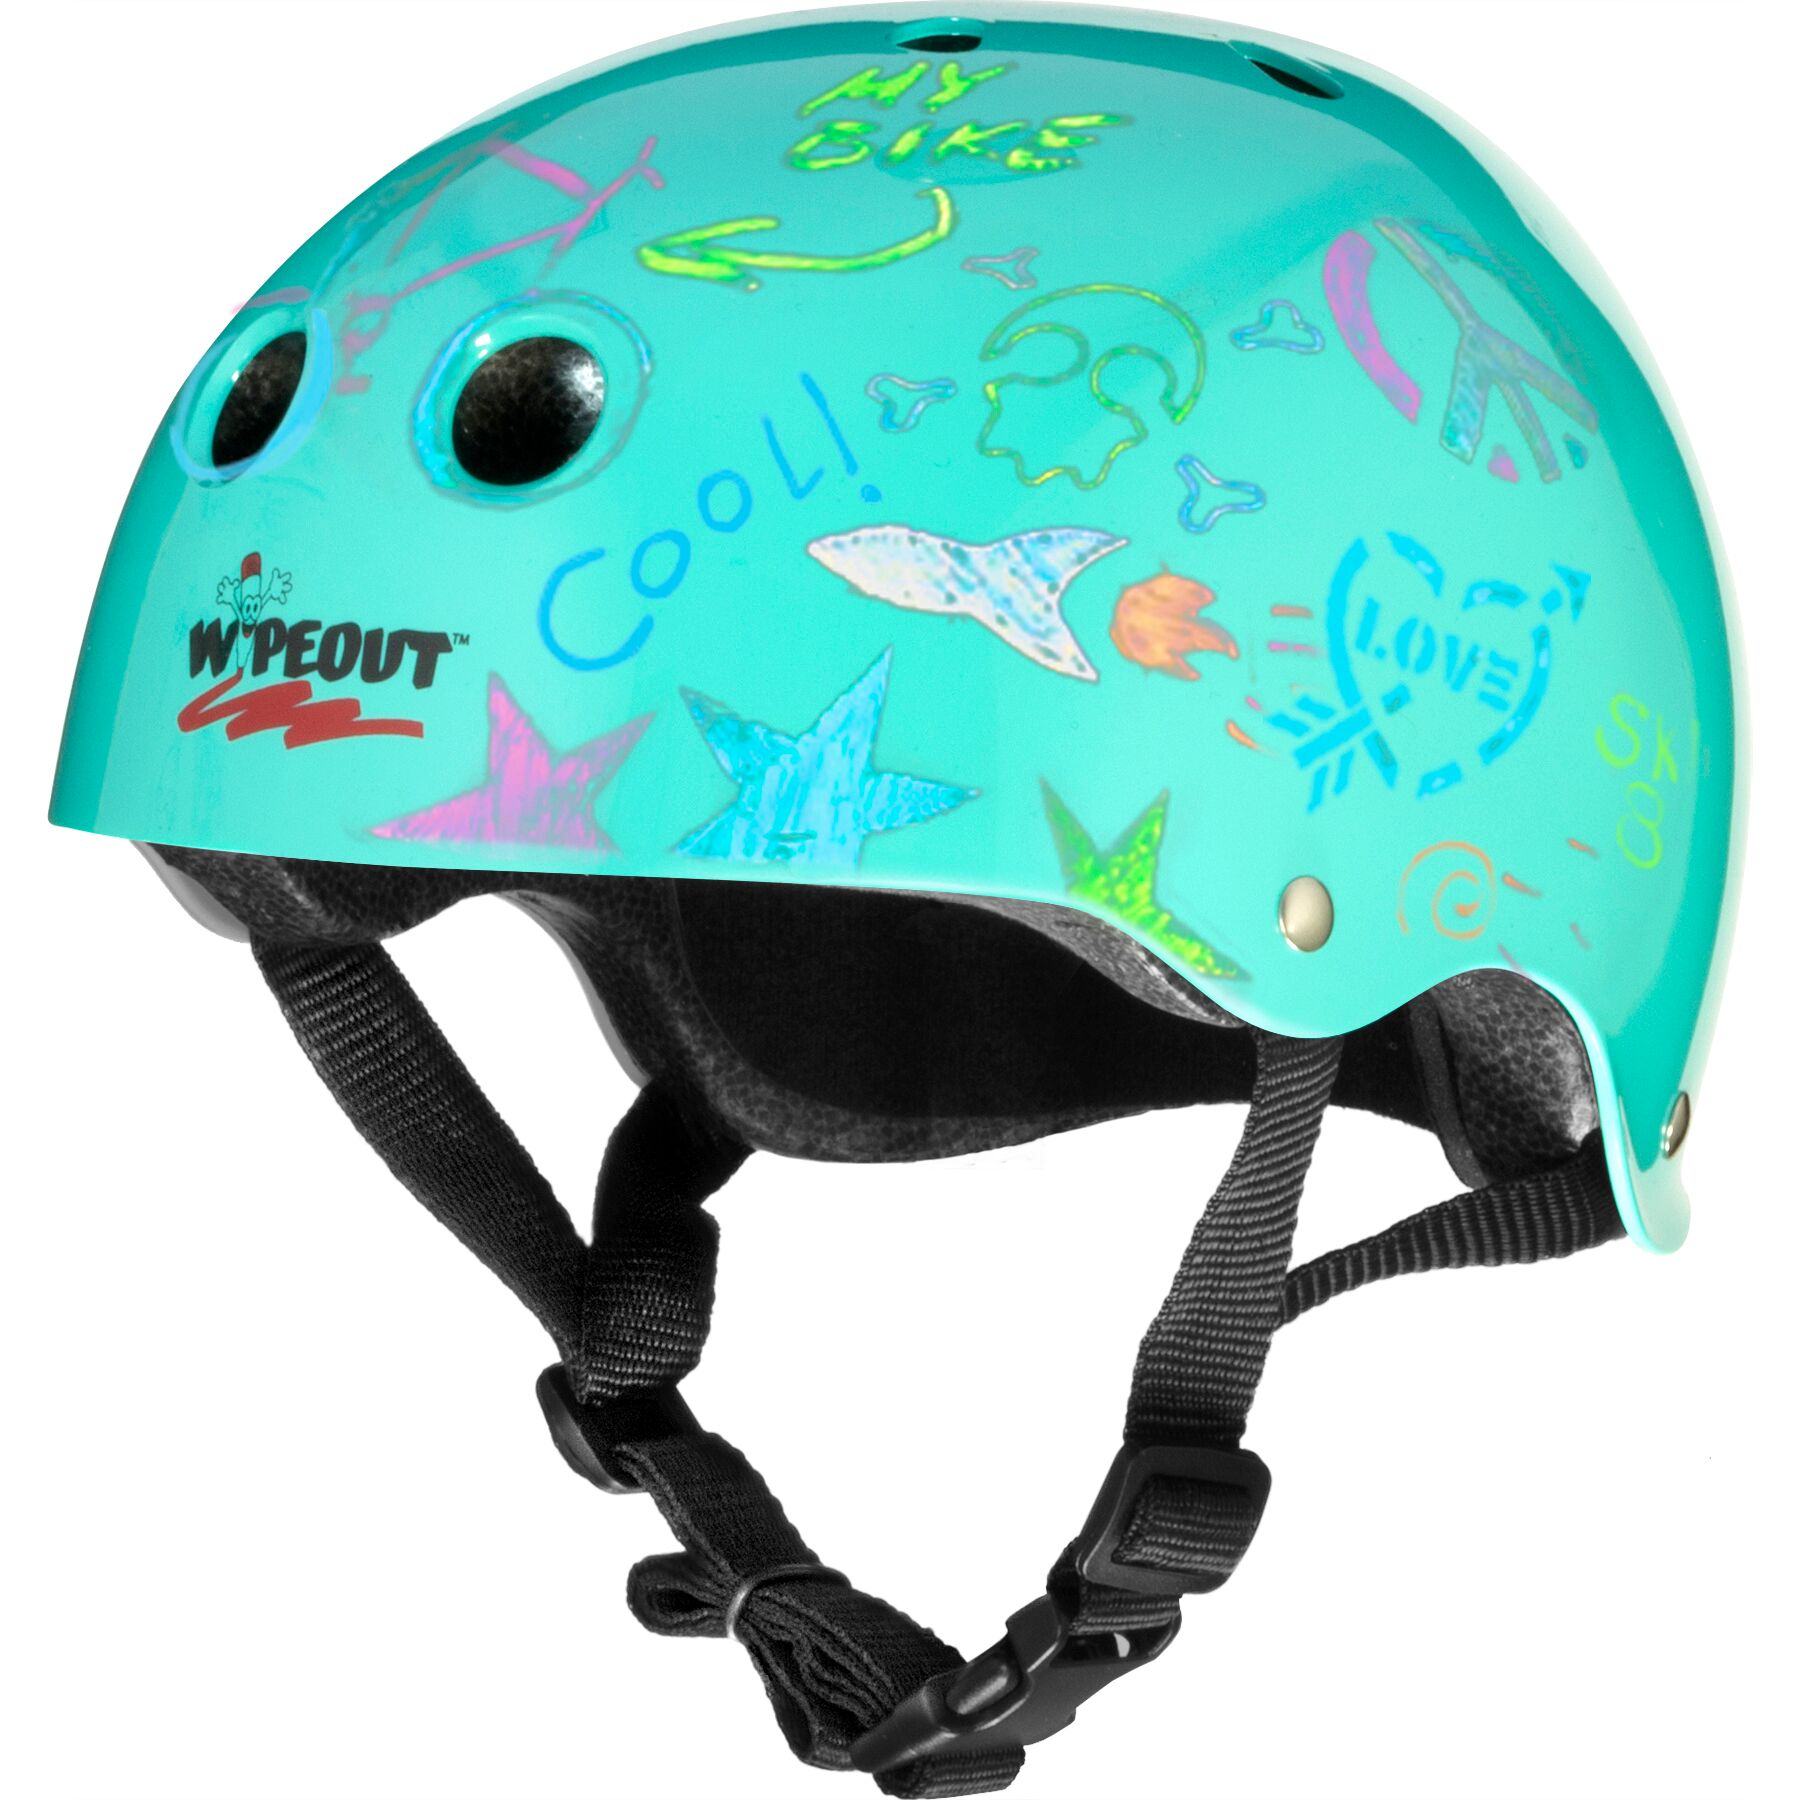 Шлем защитный спортивный WIPEOUT Teal Blue с фломастерами и трафаретами размер M 5+ обхват головы 49-52 см - фото 5